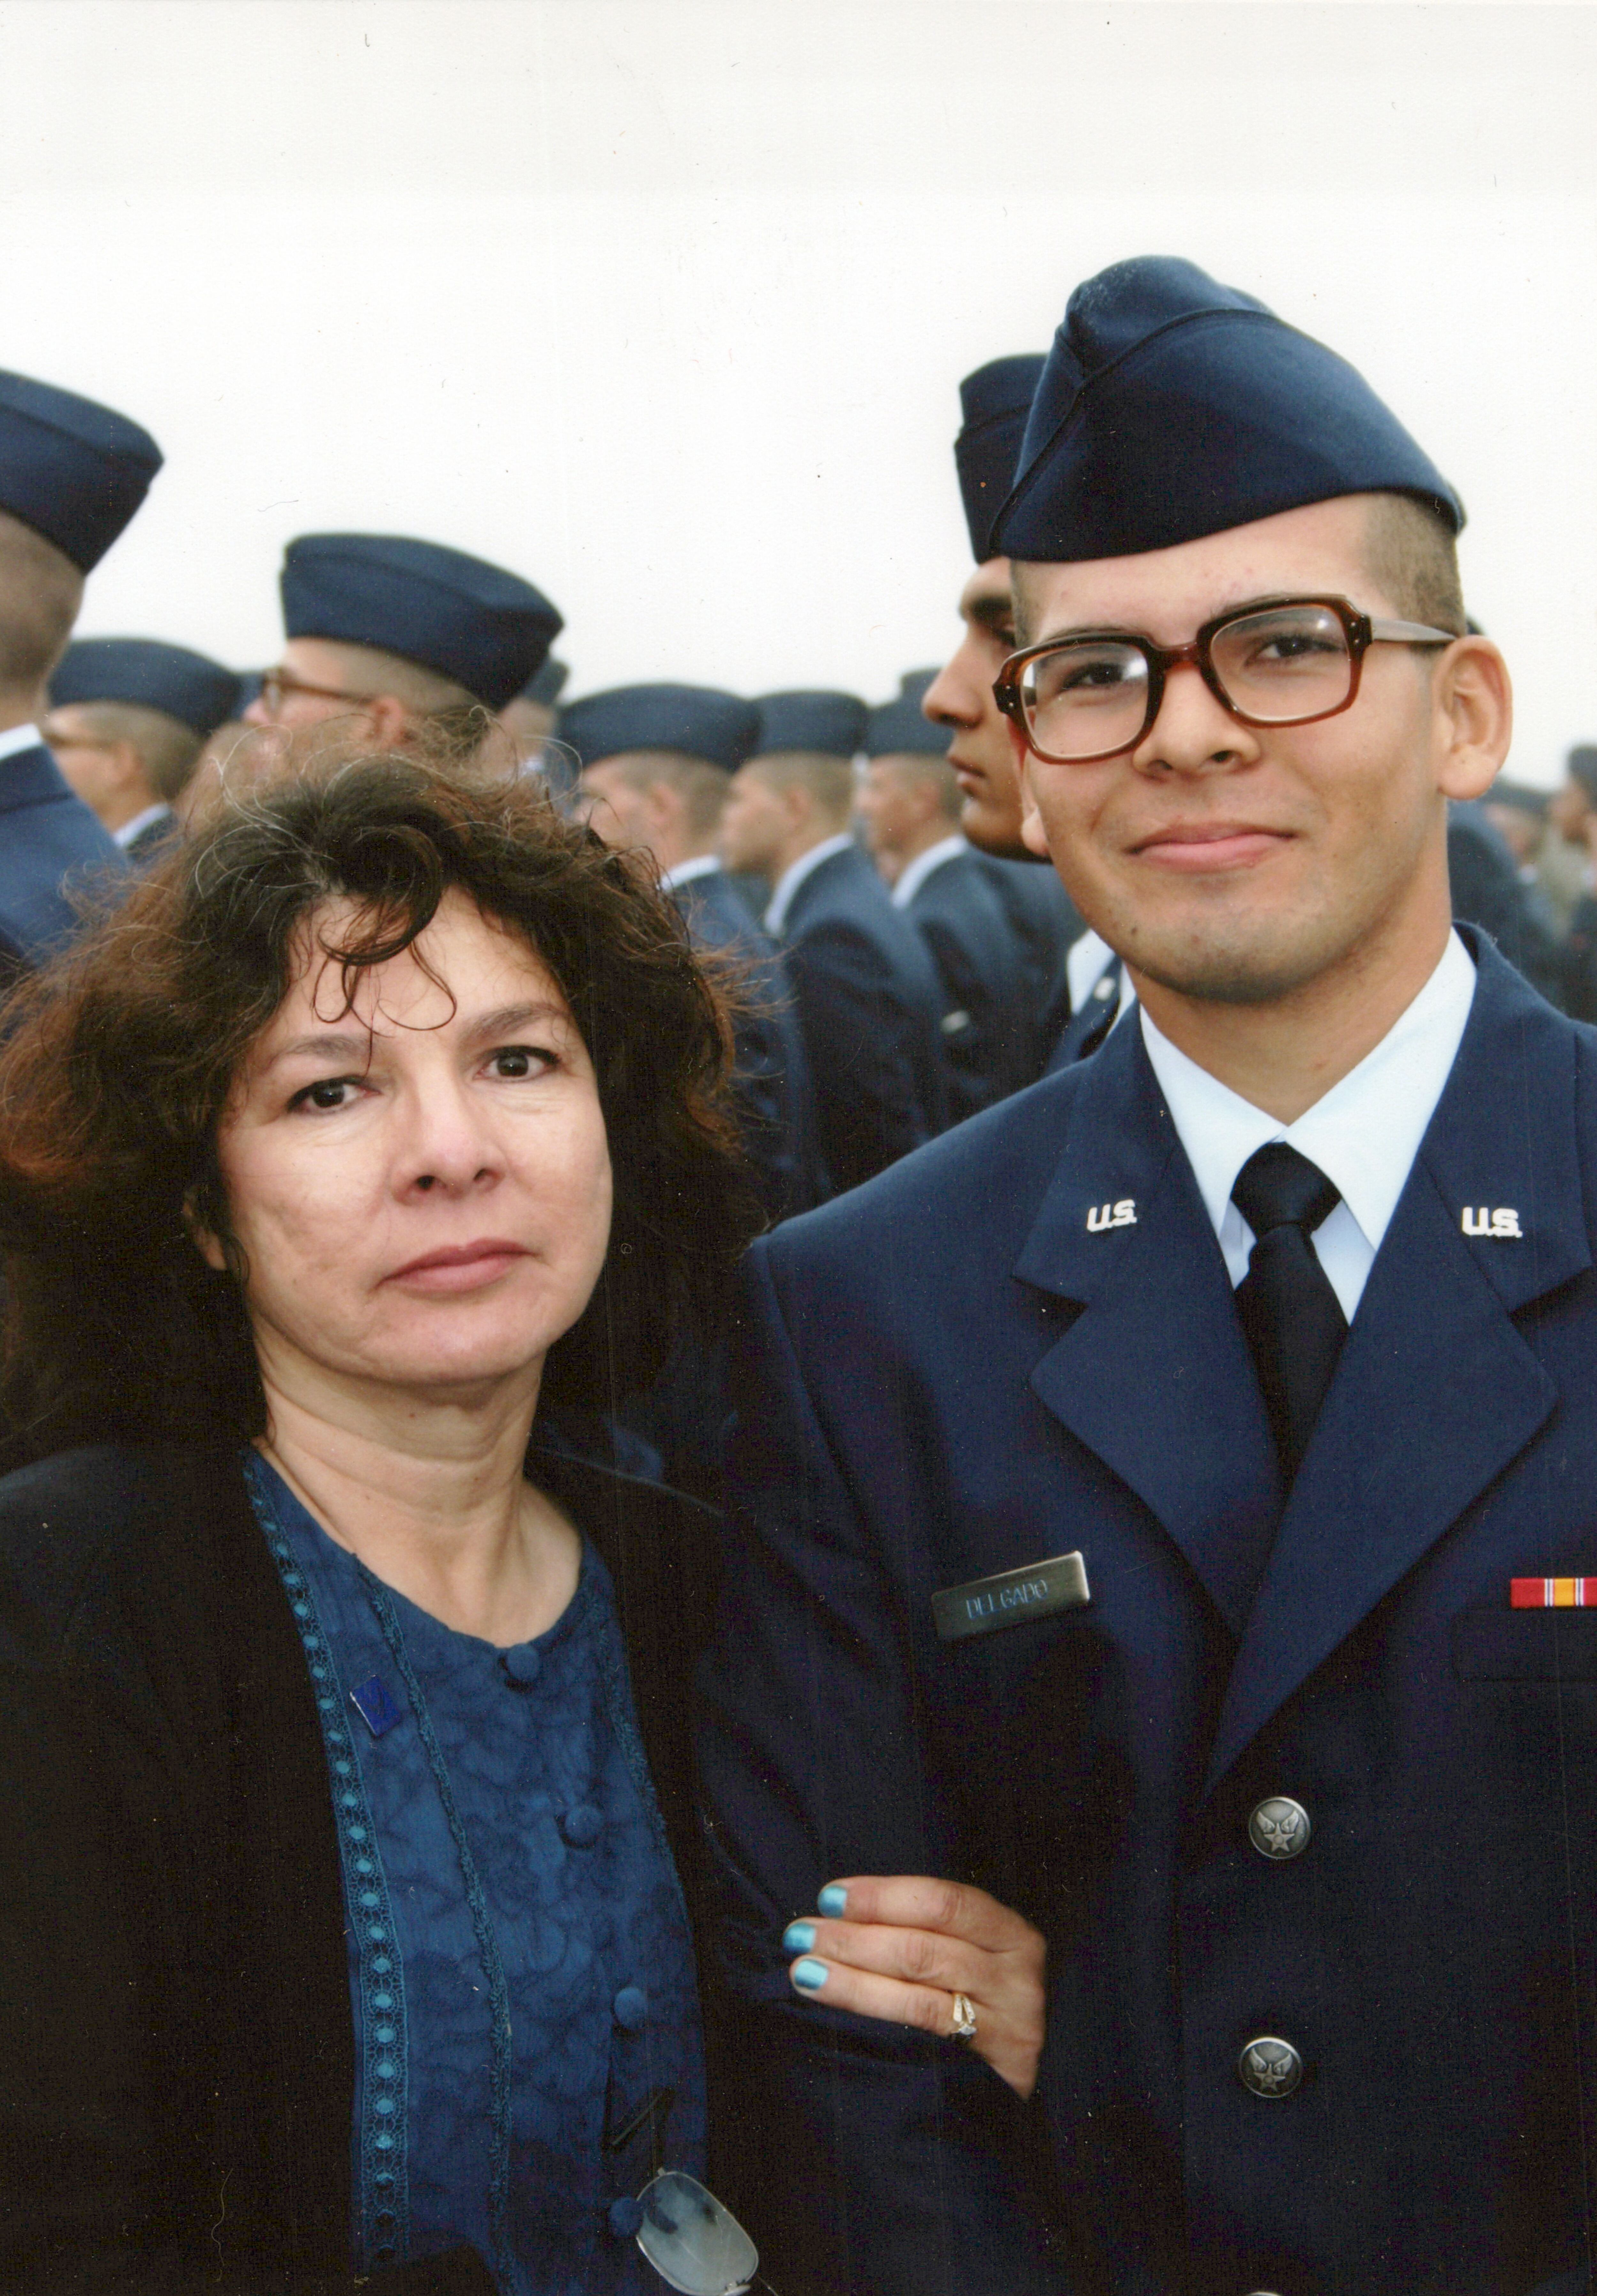 (Courtesy of Mario Delgado) Patricia Gallegos Delgado with her son Mario at his air force basic training graduation in 2005. 